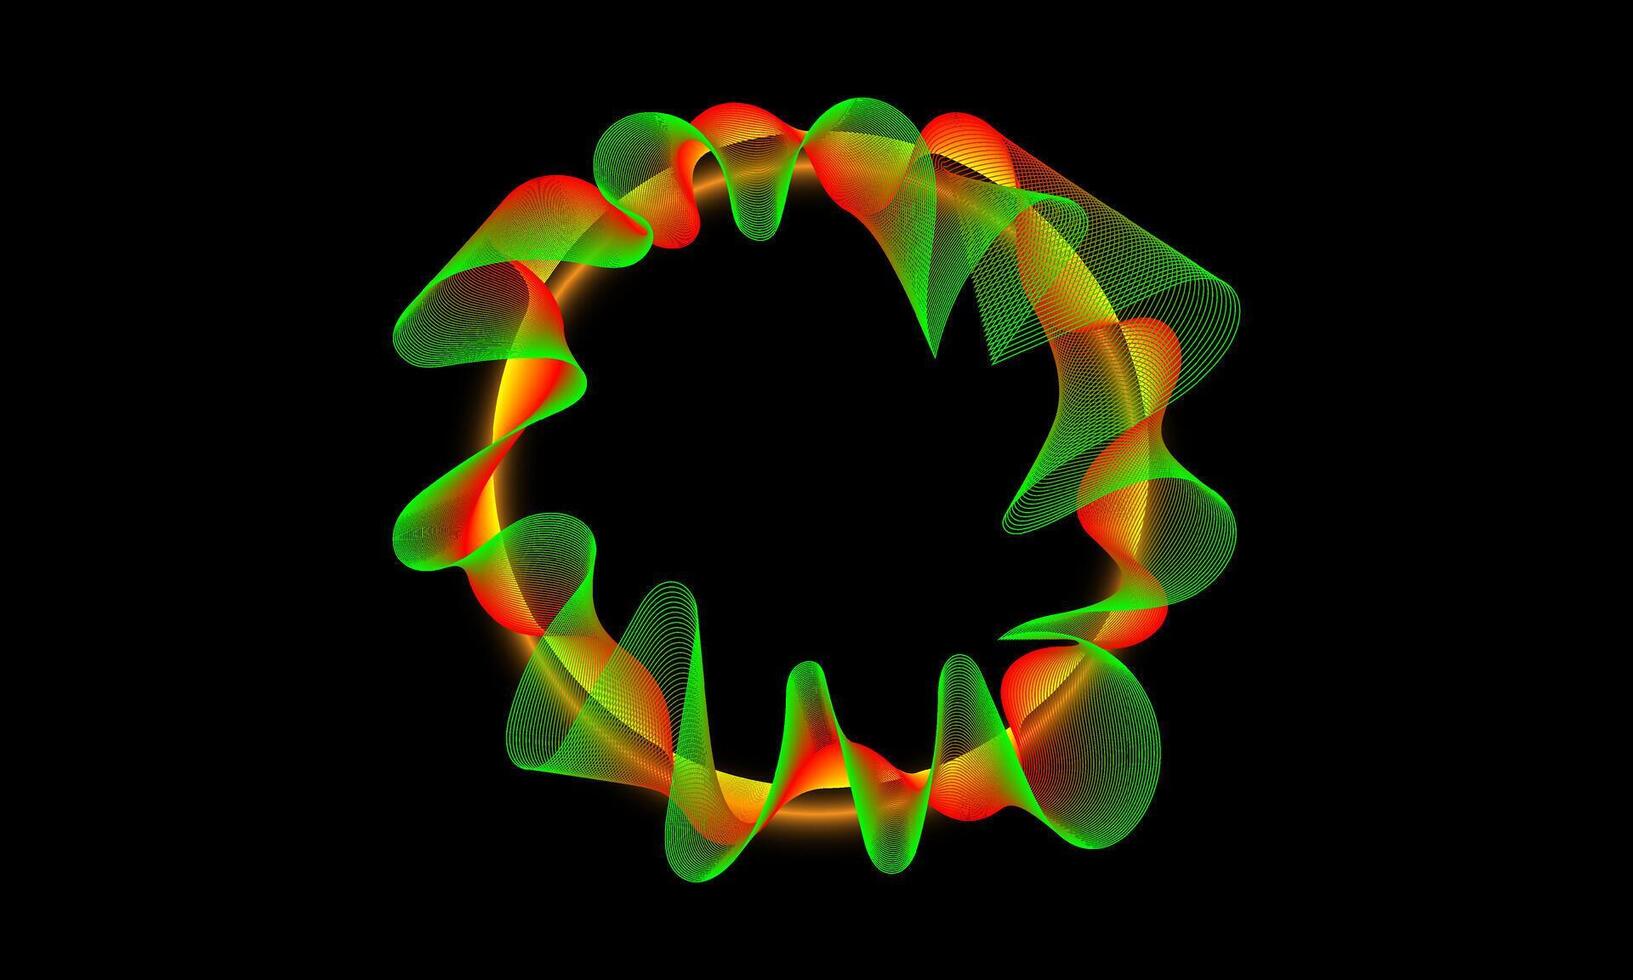 Wissenschaft, Technologie, Klang Welle, und Digital Kommunikation Konzepte. fließend Linien und Punkte von Grün und Orange Kreis Welle Muster auf ein schwarz Hintergrund. vektor